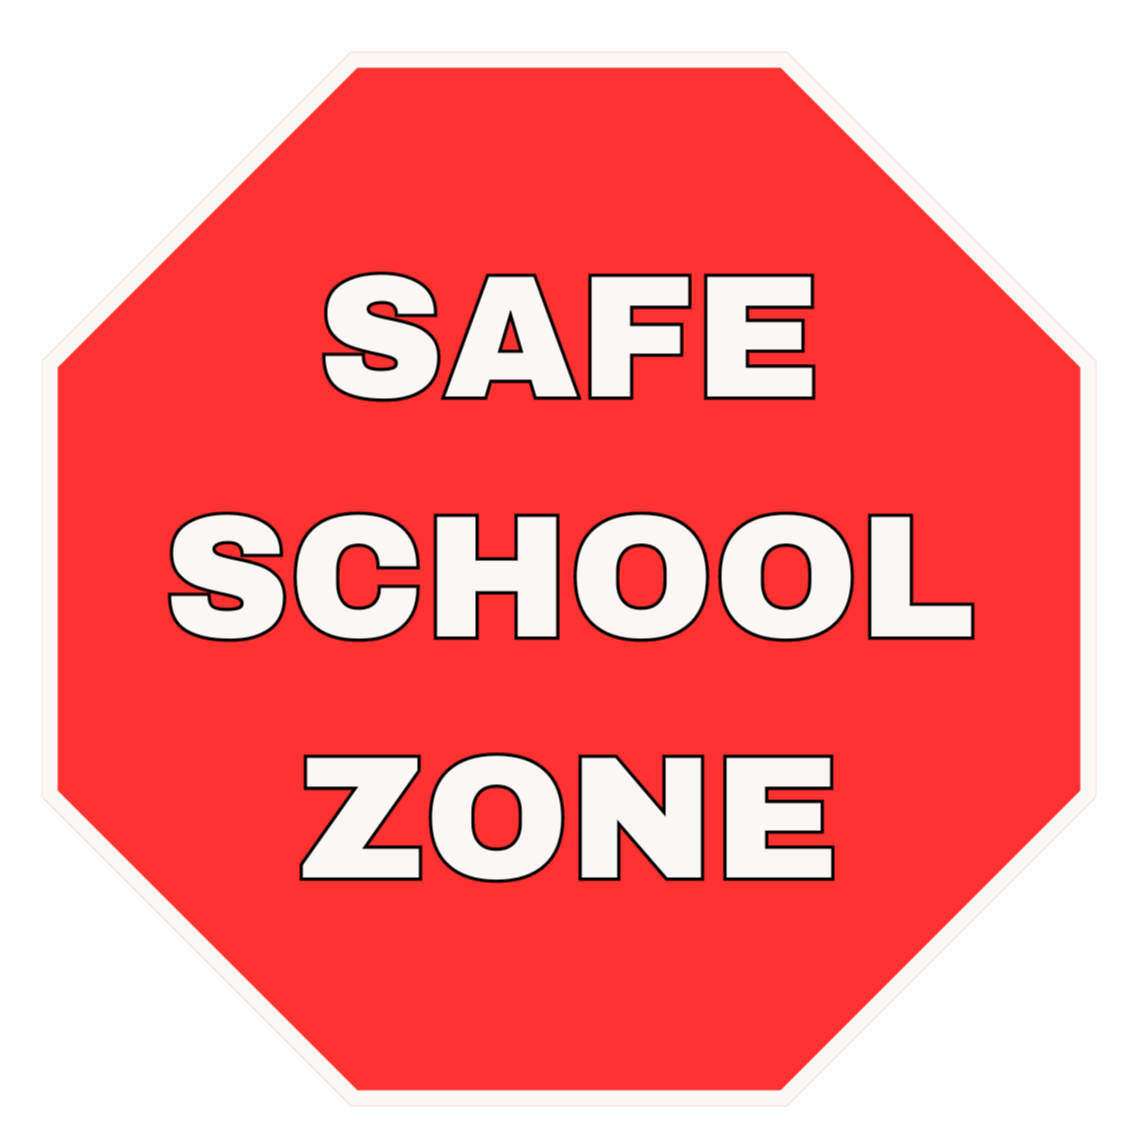 SAFE SCHOOL